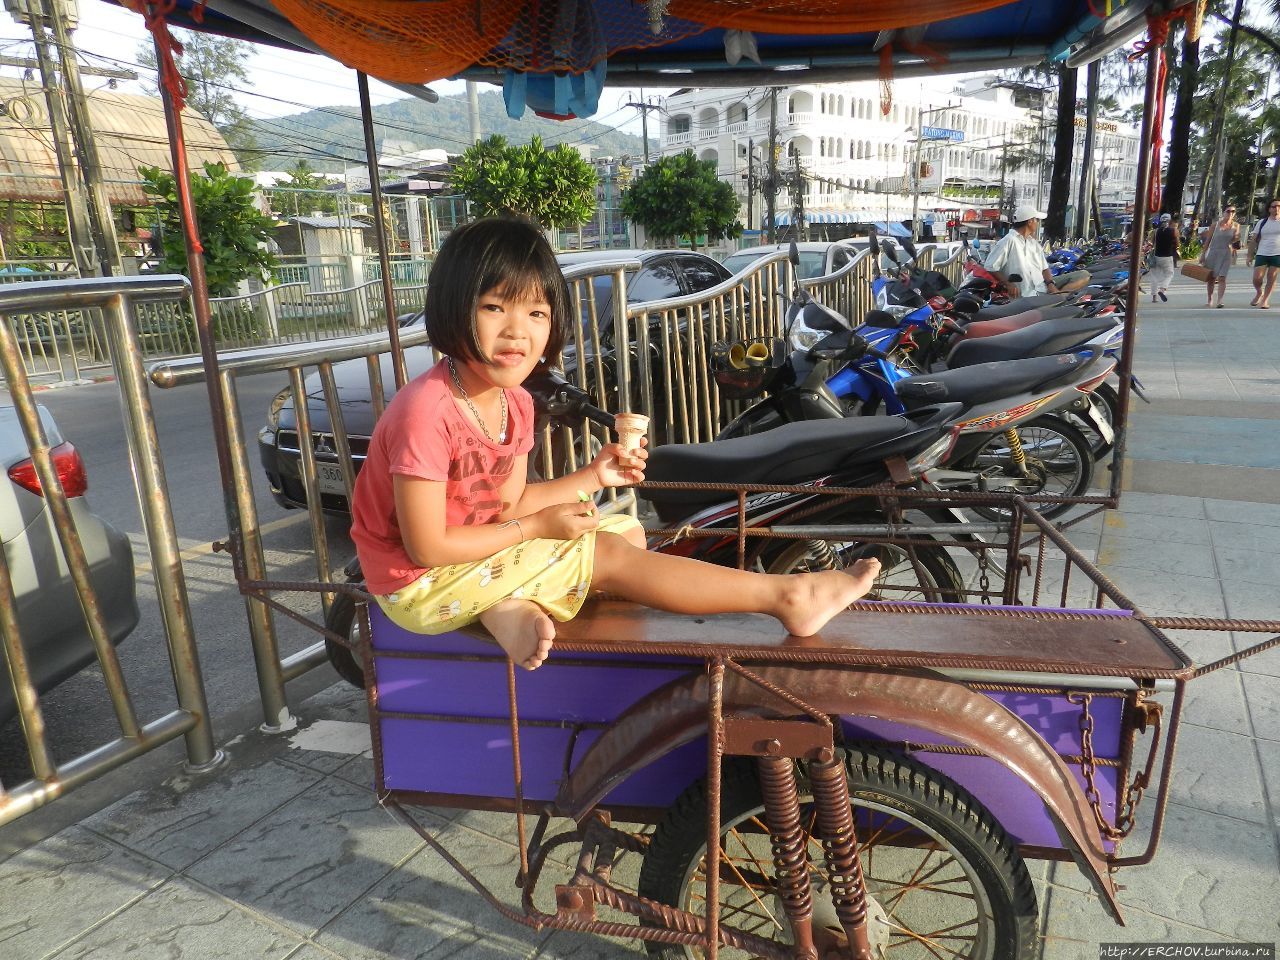 Патонг бич — имея хорошее, не ищите лучшего Патонг, Таиланд